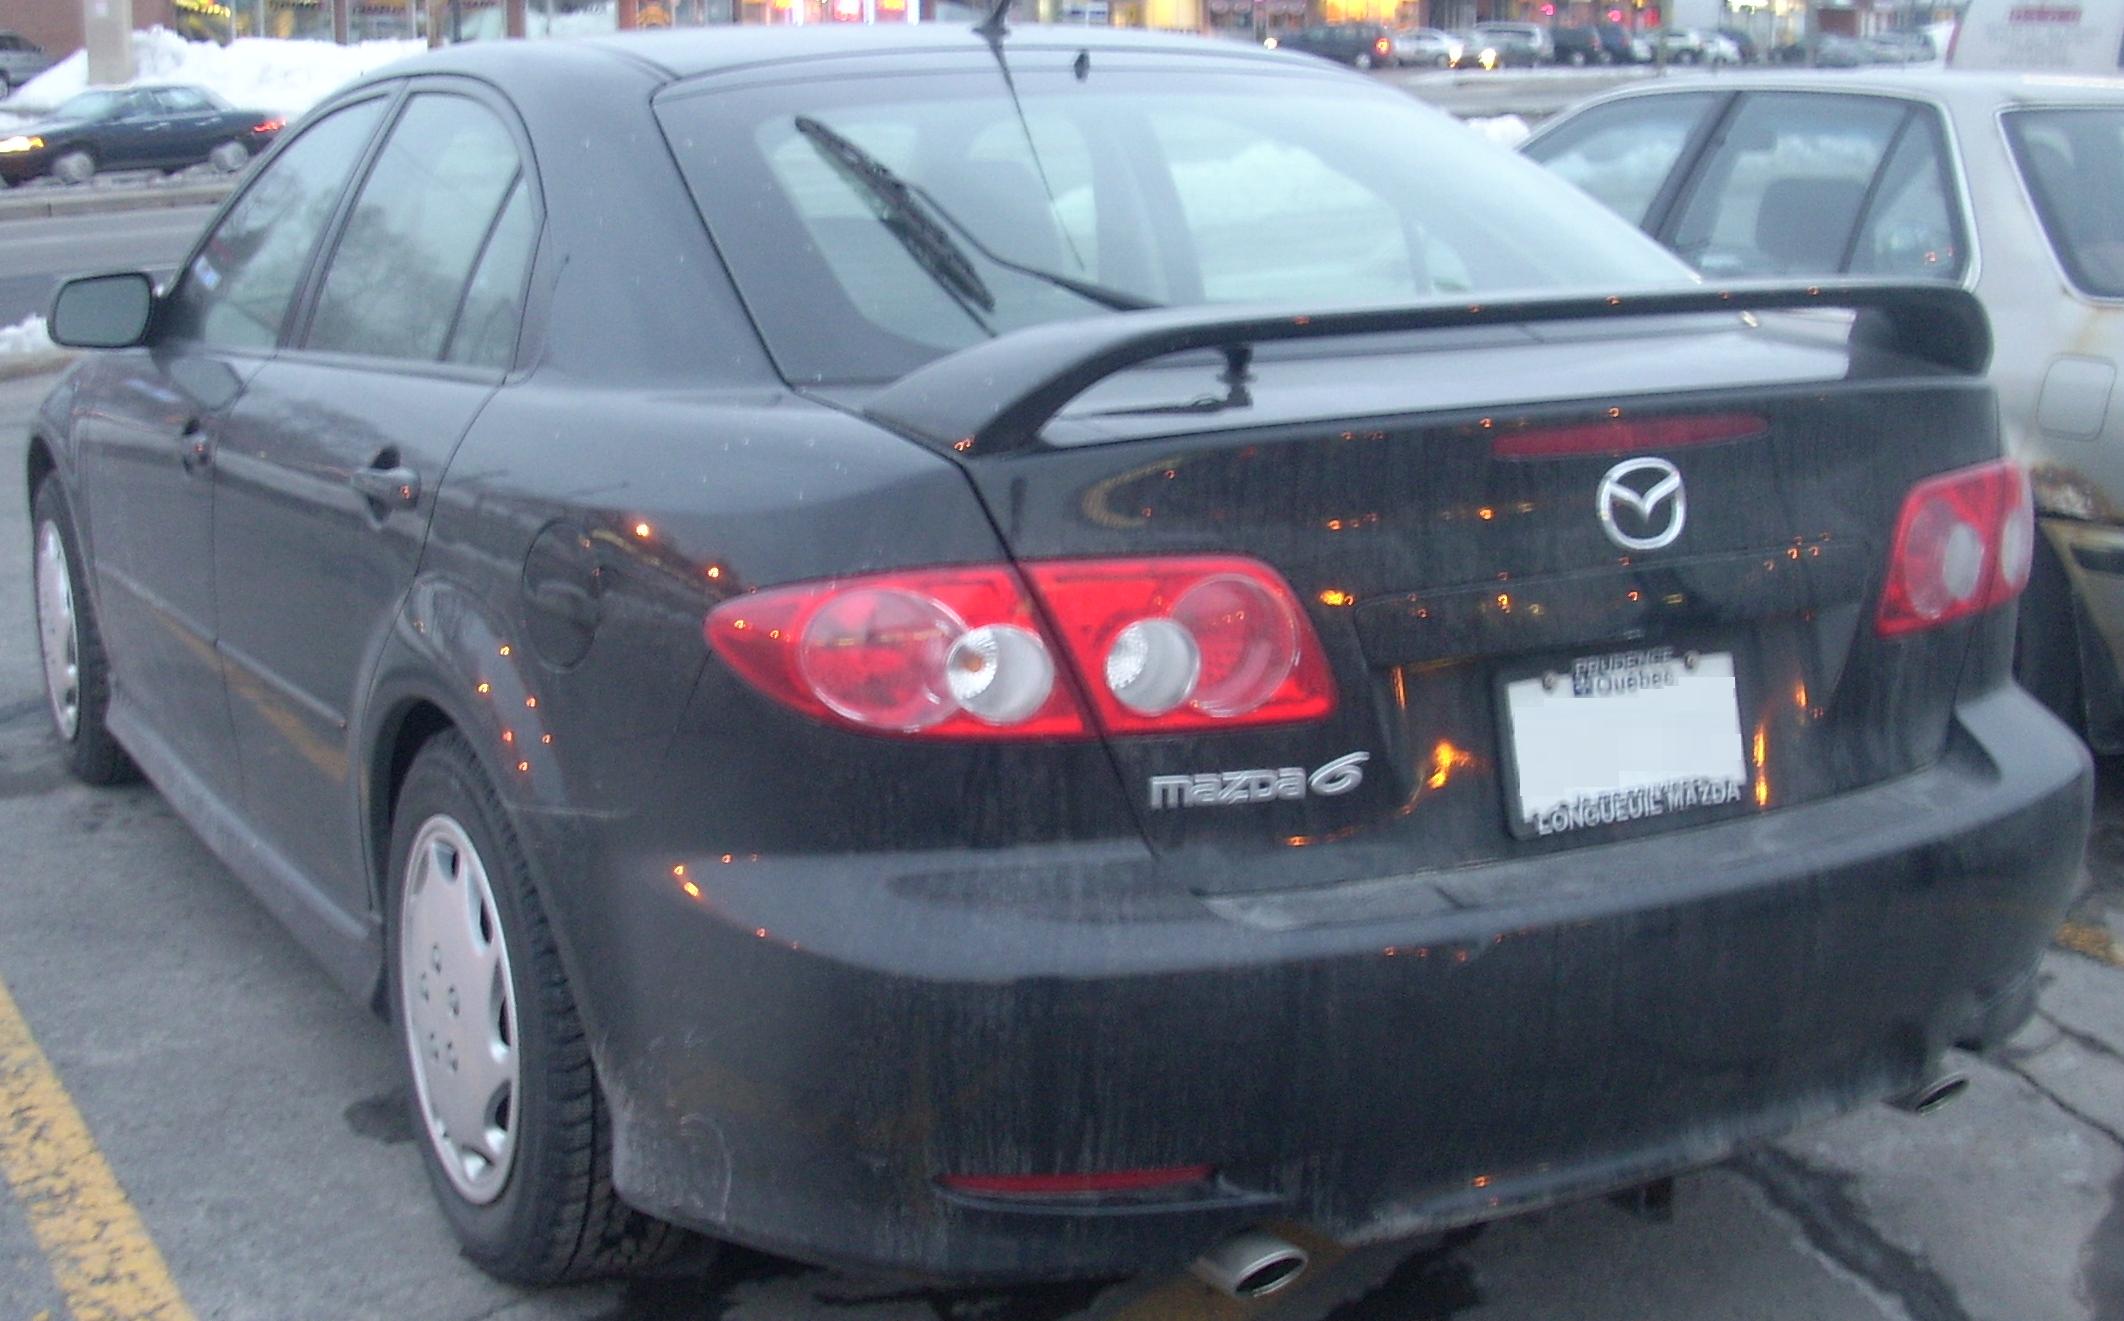 File:'03-'05 Mazda 6 Hatchback.JPG - Wikimedia Commons